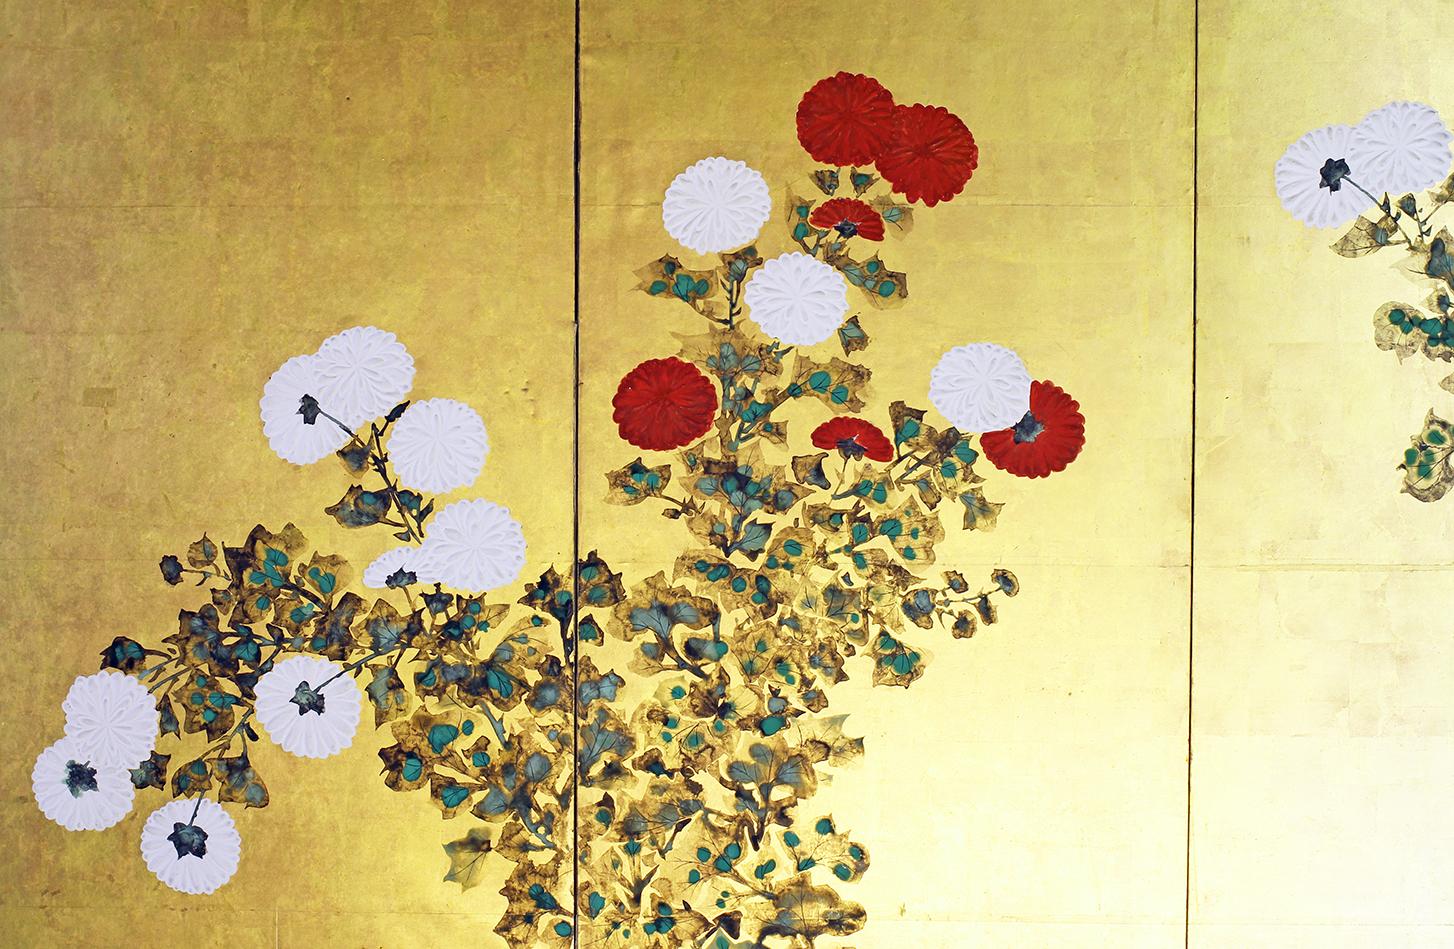 Frühlingslandschaft eines unbekannten Malers der Rinpa-Schule, 19. Jahrhundert, sechs Tafeln mit Tusche auf Blattgold auf Reispapier.
Die Blumen werden mit der 